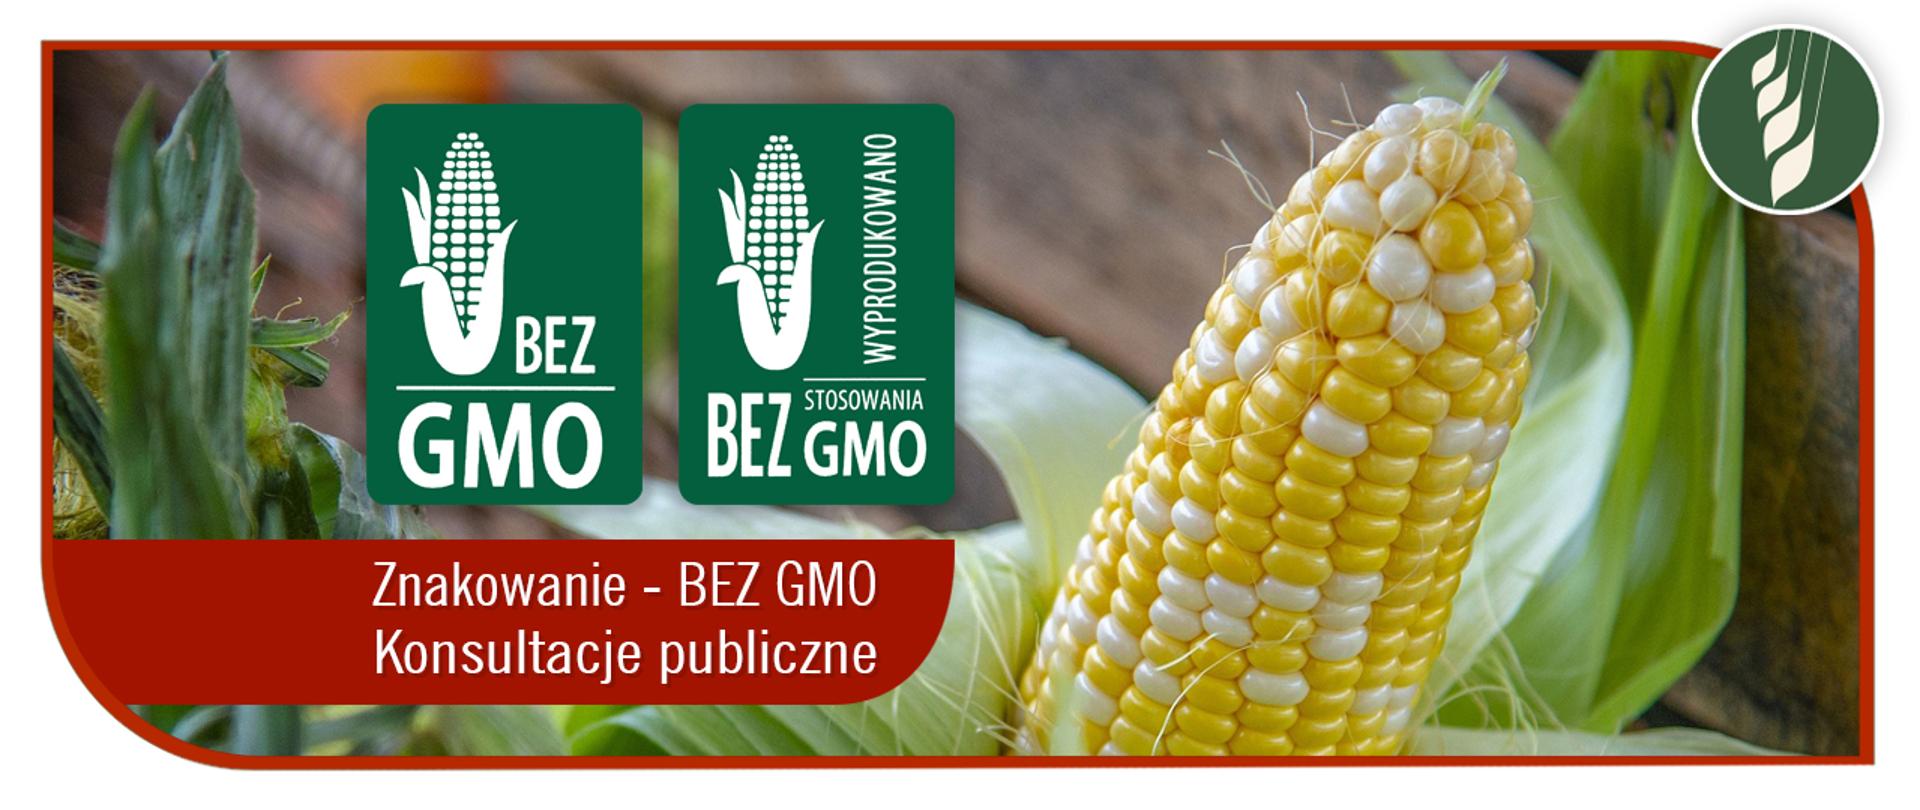 Znakowanie BEZ GMO Konsultacje publiczne